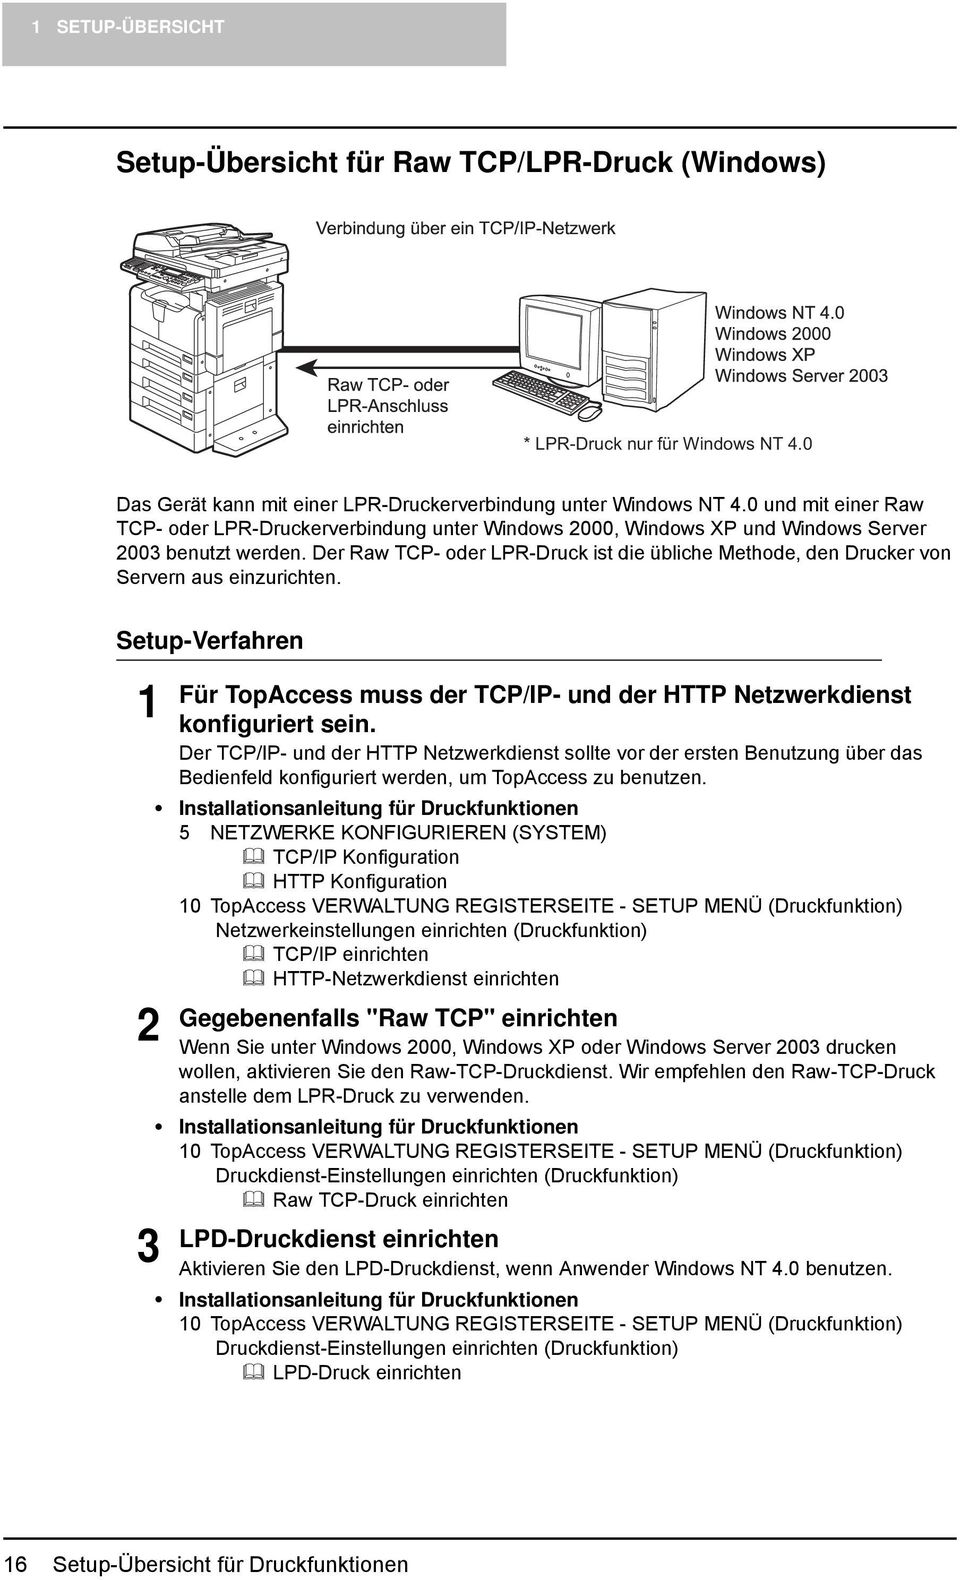 Der Raw TCP- oder LPR-Druck ist die übliche Methode, den Drucker von Servern aus einzurichten. Setup-Verfahren 1 2 3 Für TopAccess muss der TCP/IP- und der HTTP Netzwerkdienst konfiguriert sein.